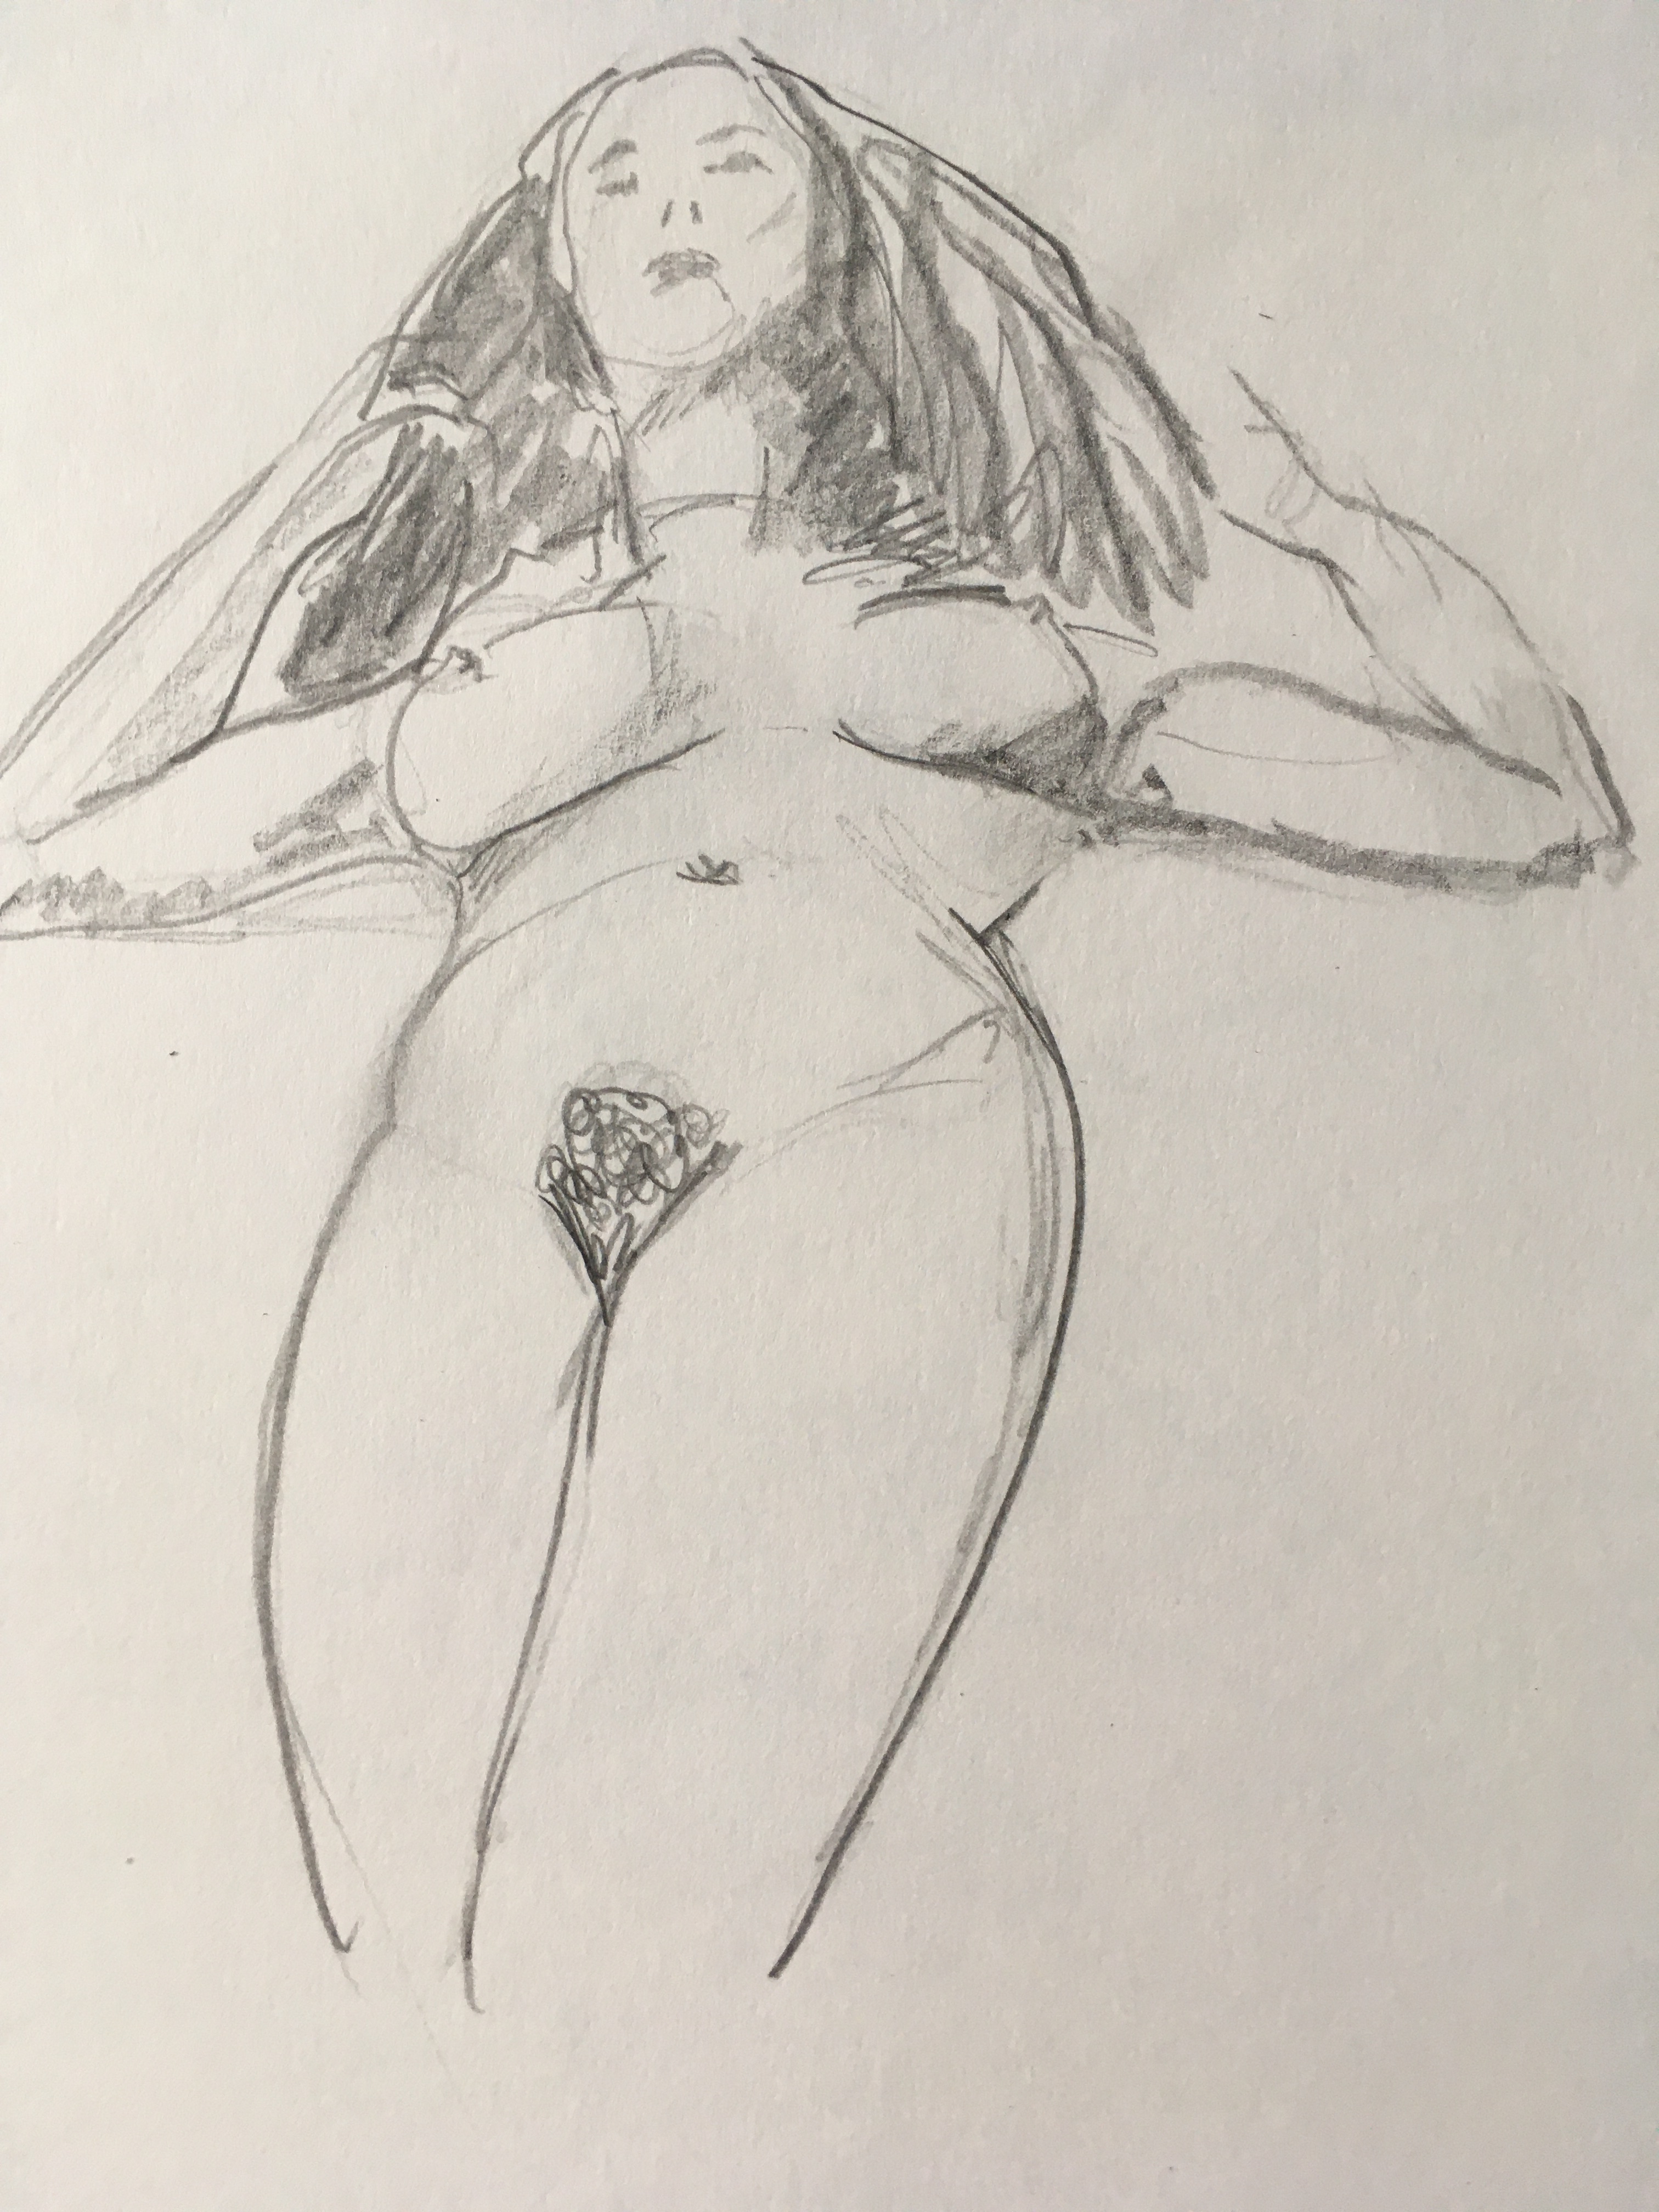  Croquis crayon papier buste de femme contre-plongÃ©es  cours de dessin 